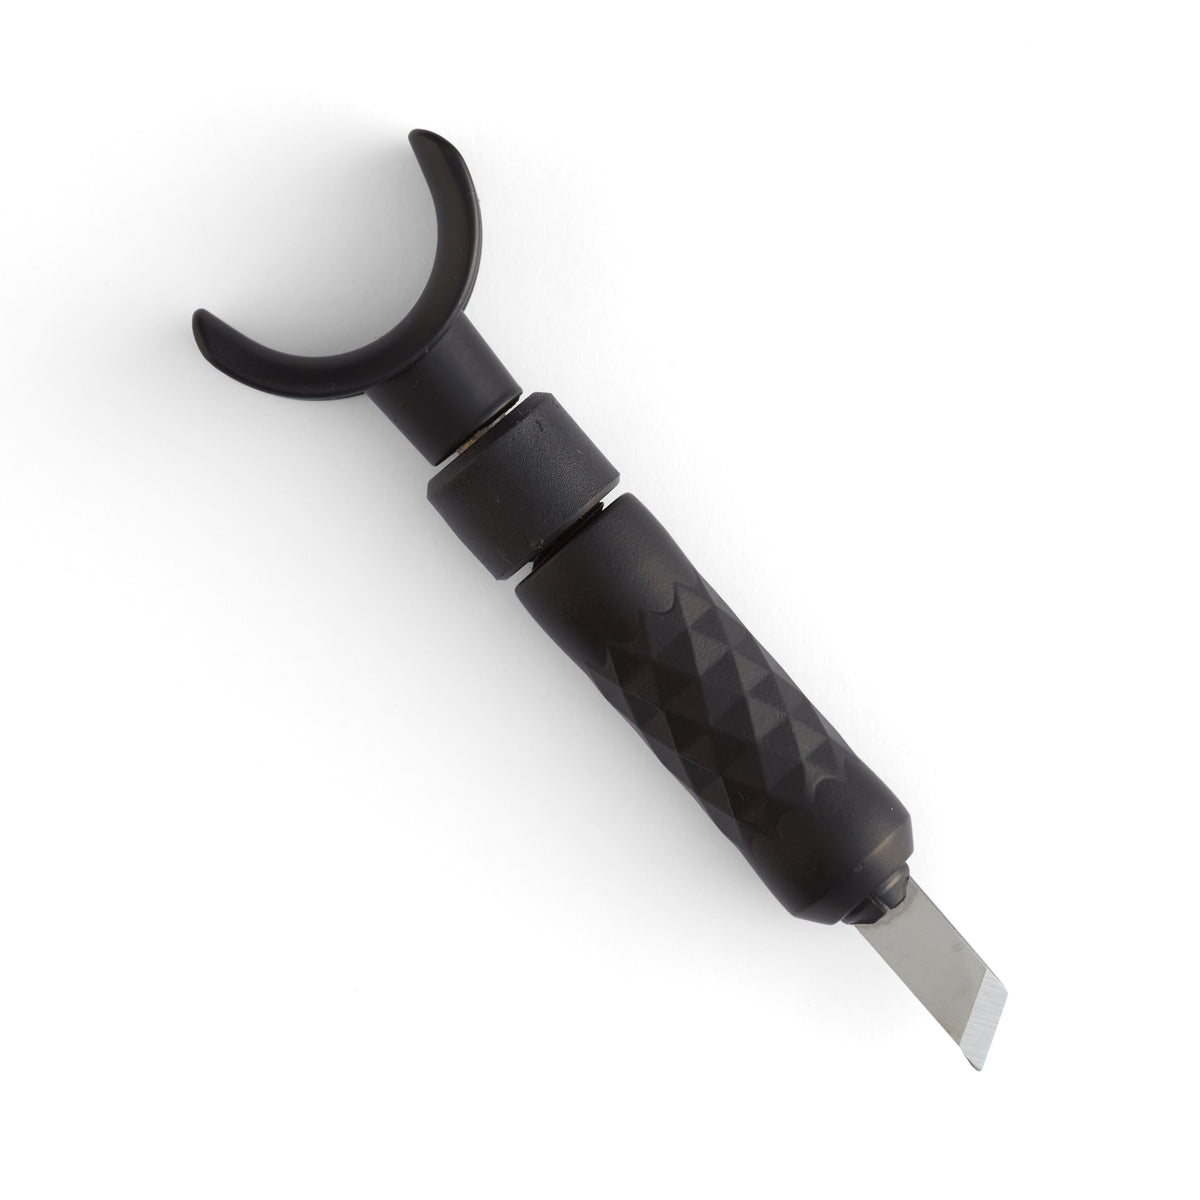 Craftool Pro Swivel Knife Large 82009-02